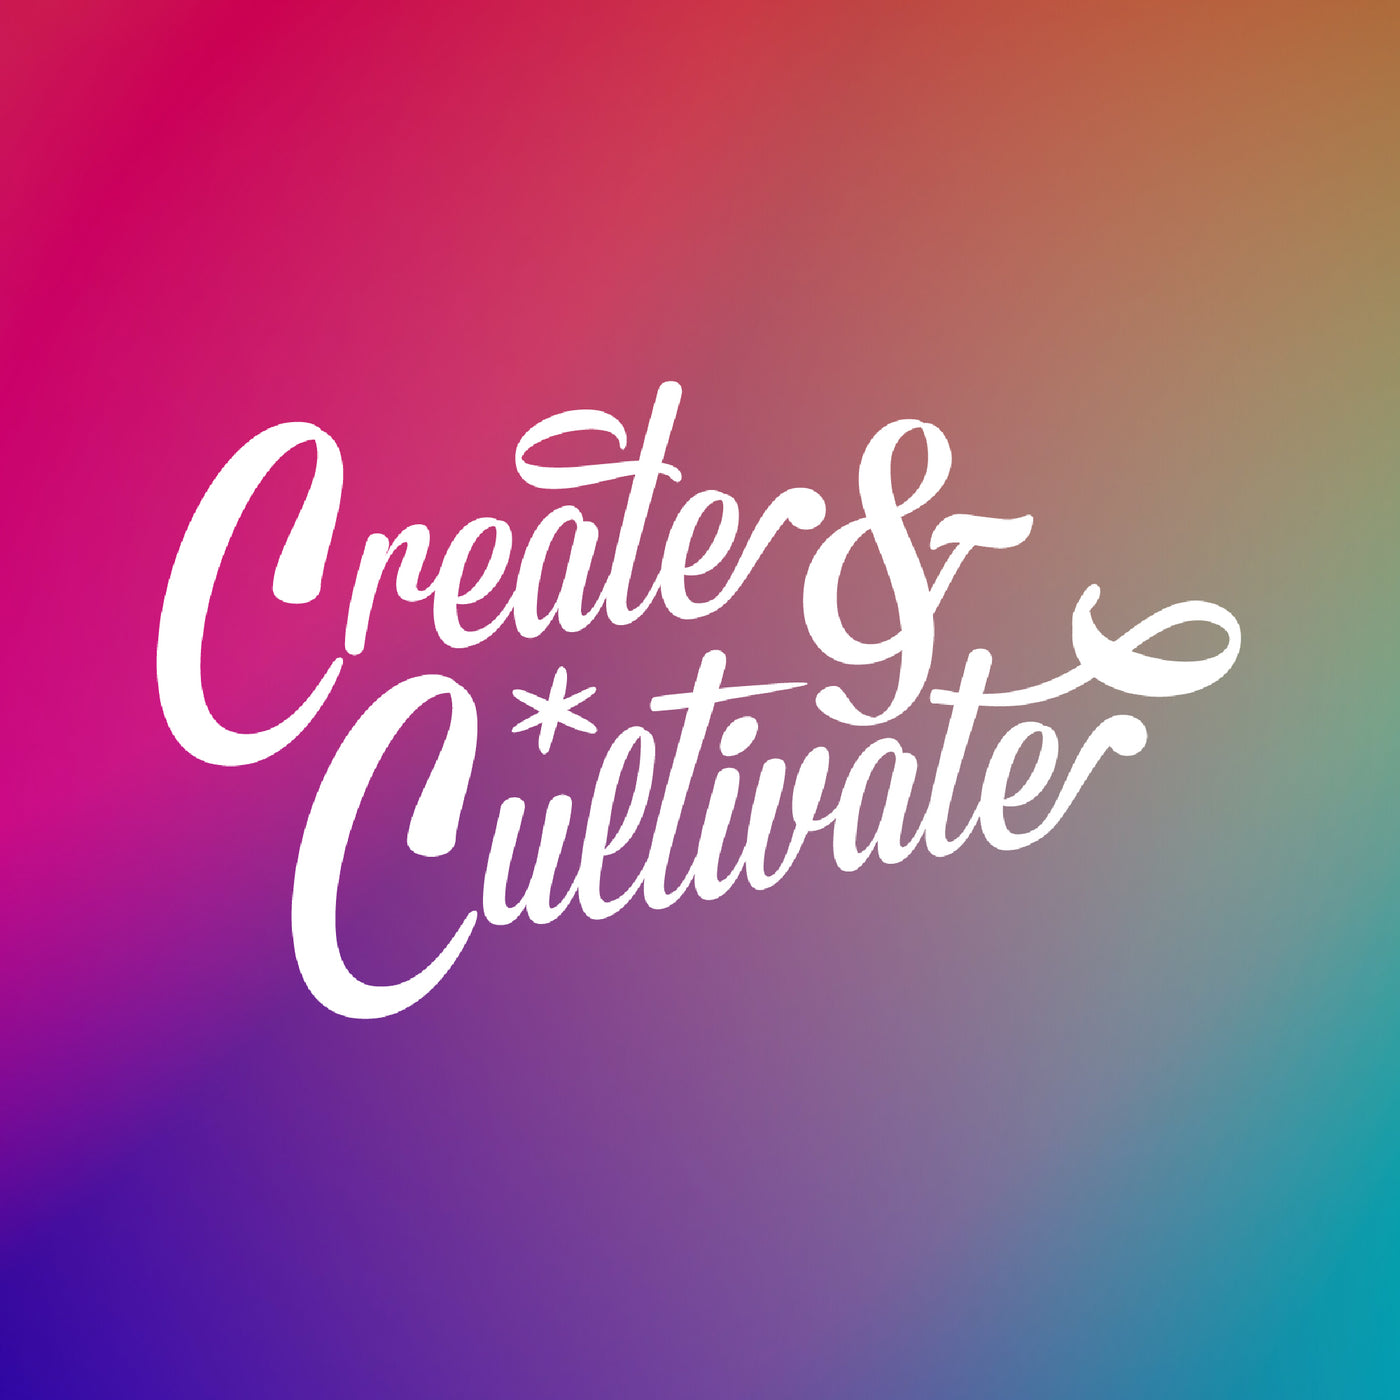 Create & Cultivate